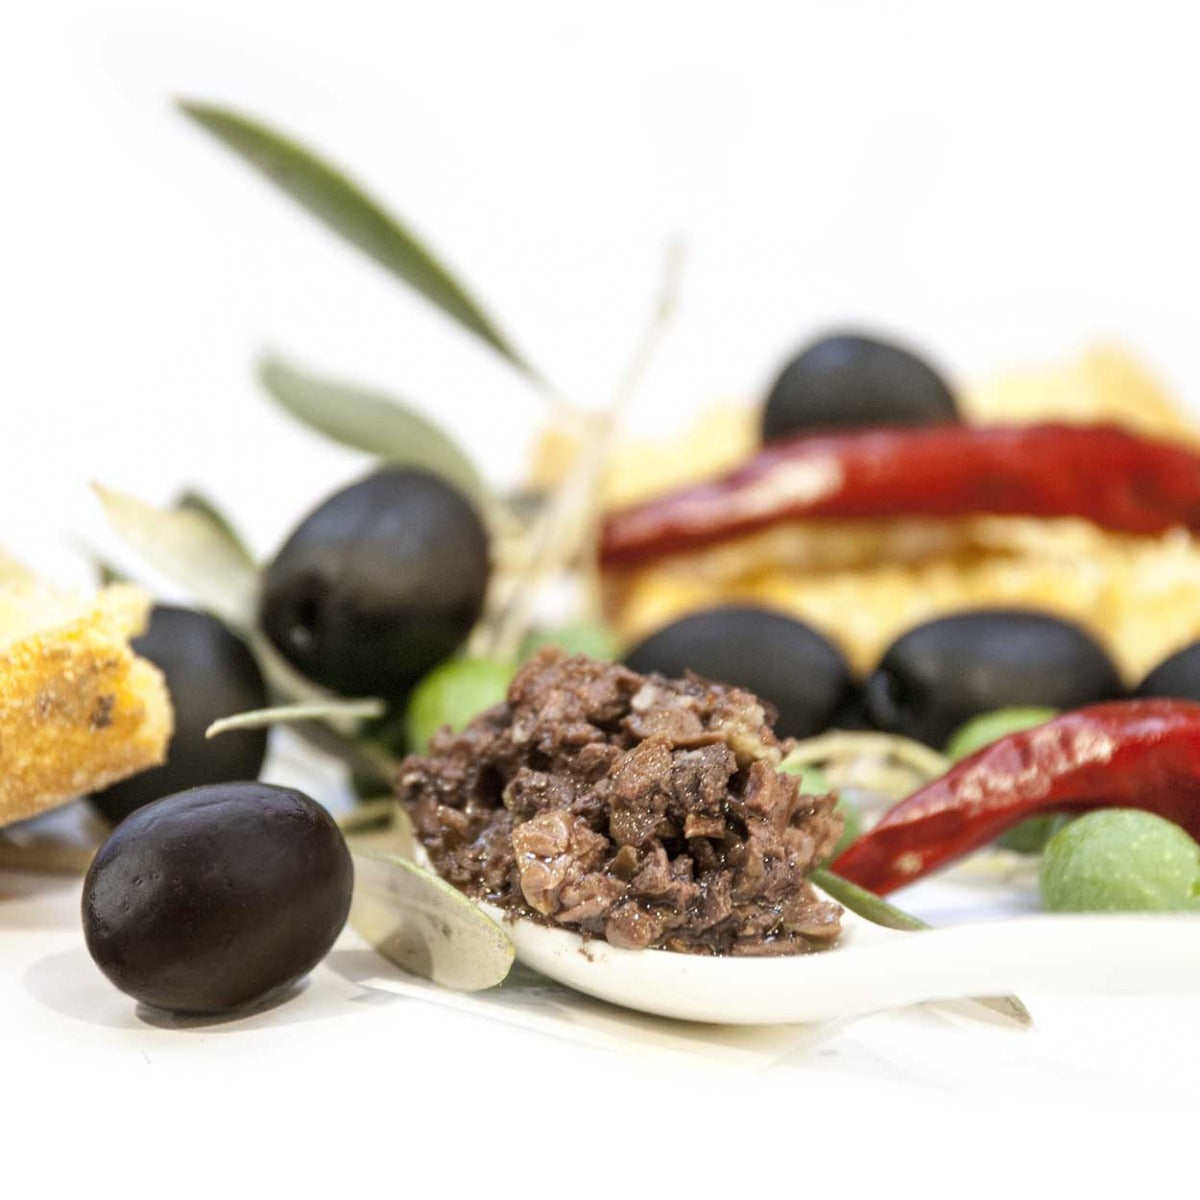 Pesto di Olive Nere Gr.210 - Dolci calabresi - Sweetsinternationalsrls